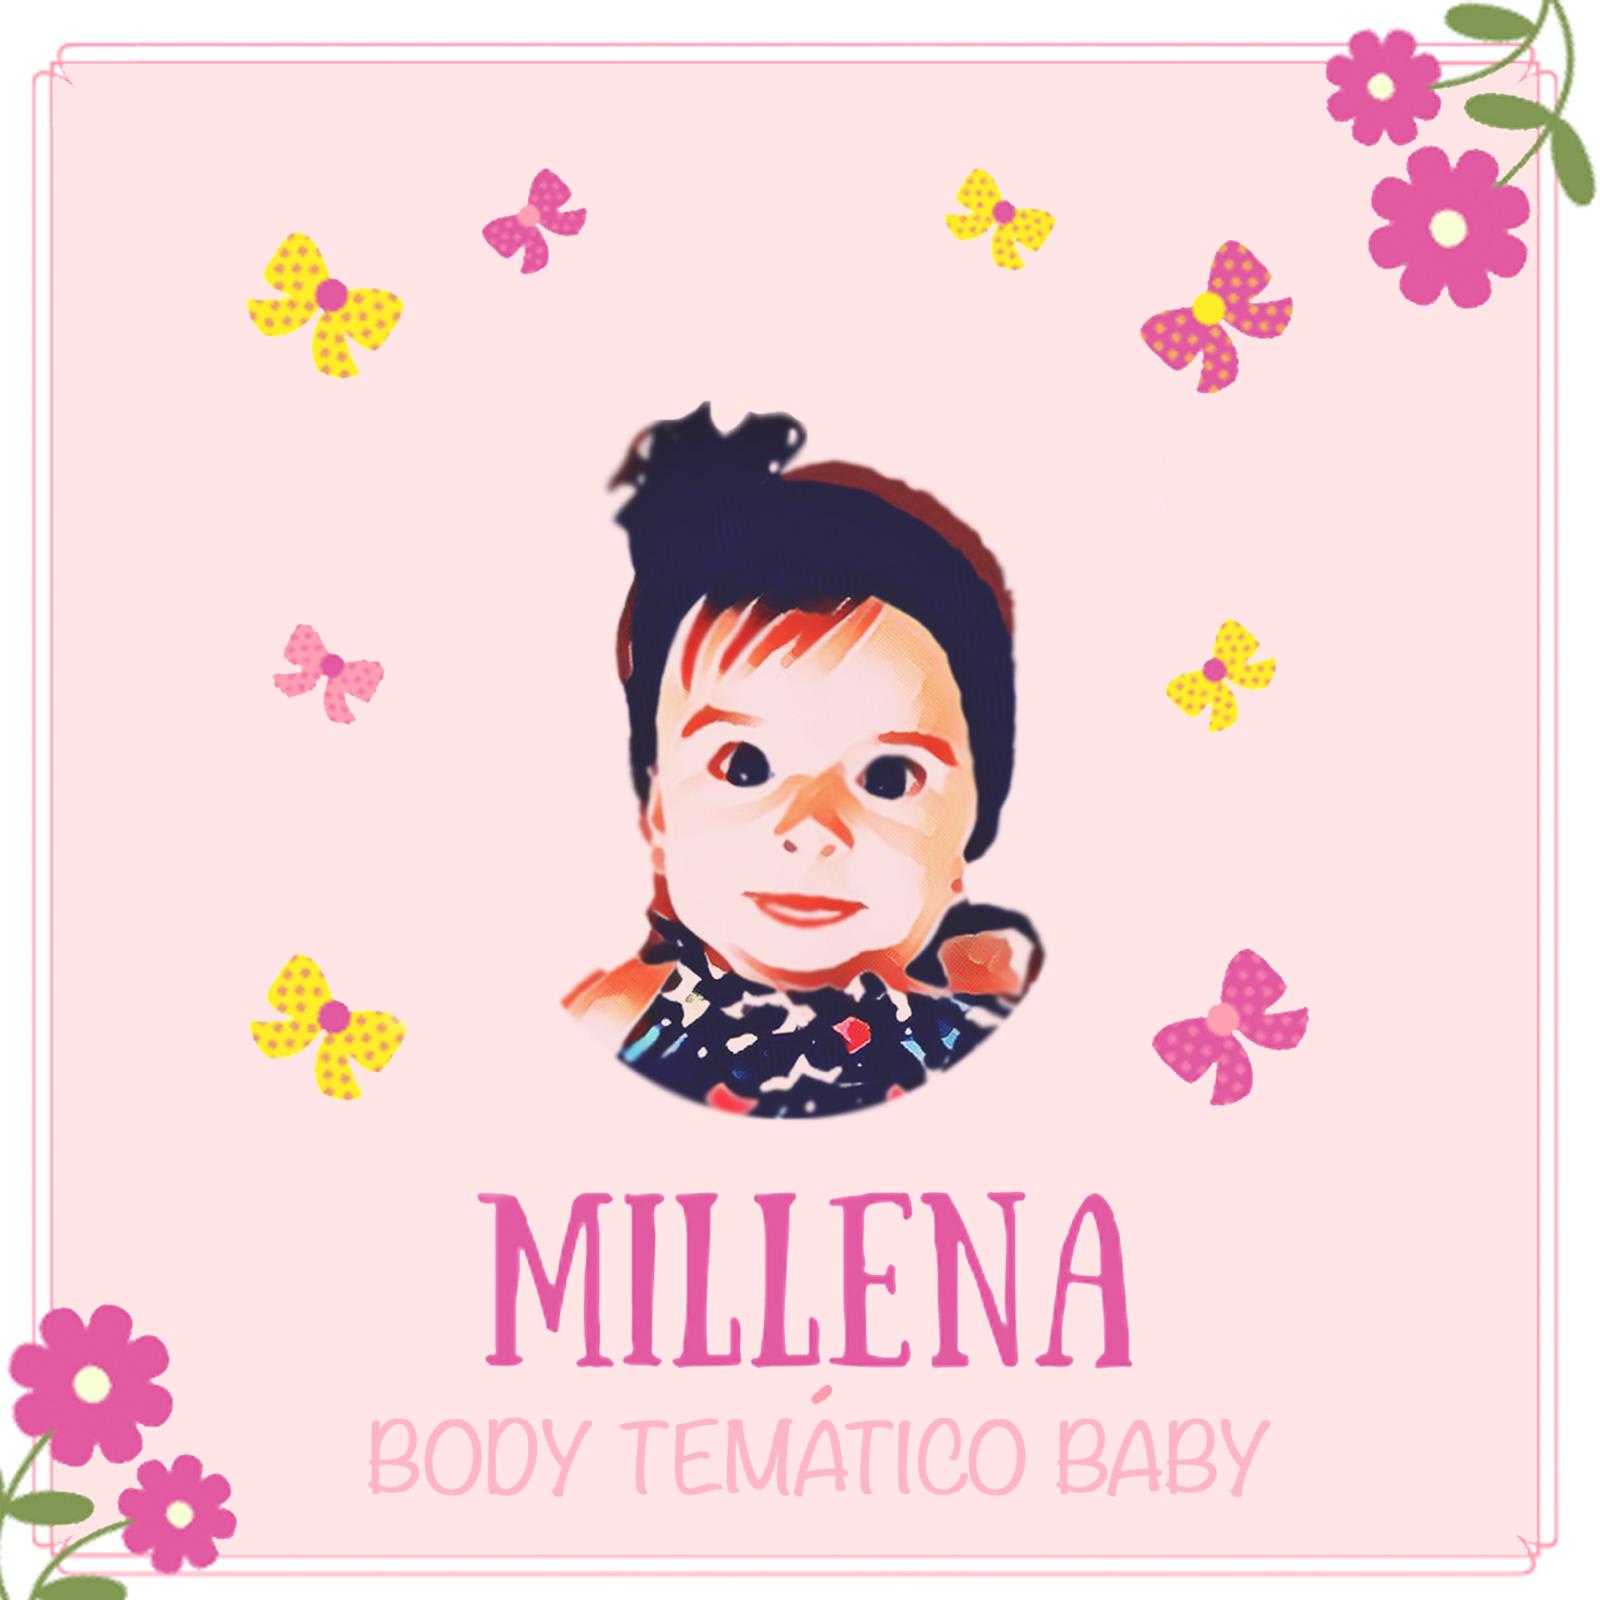 Millena Baby